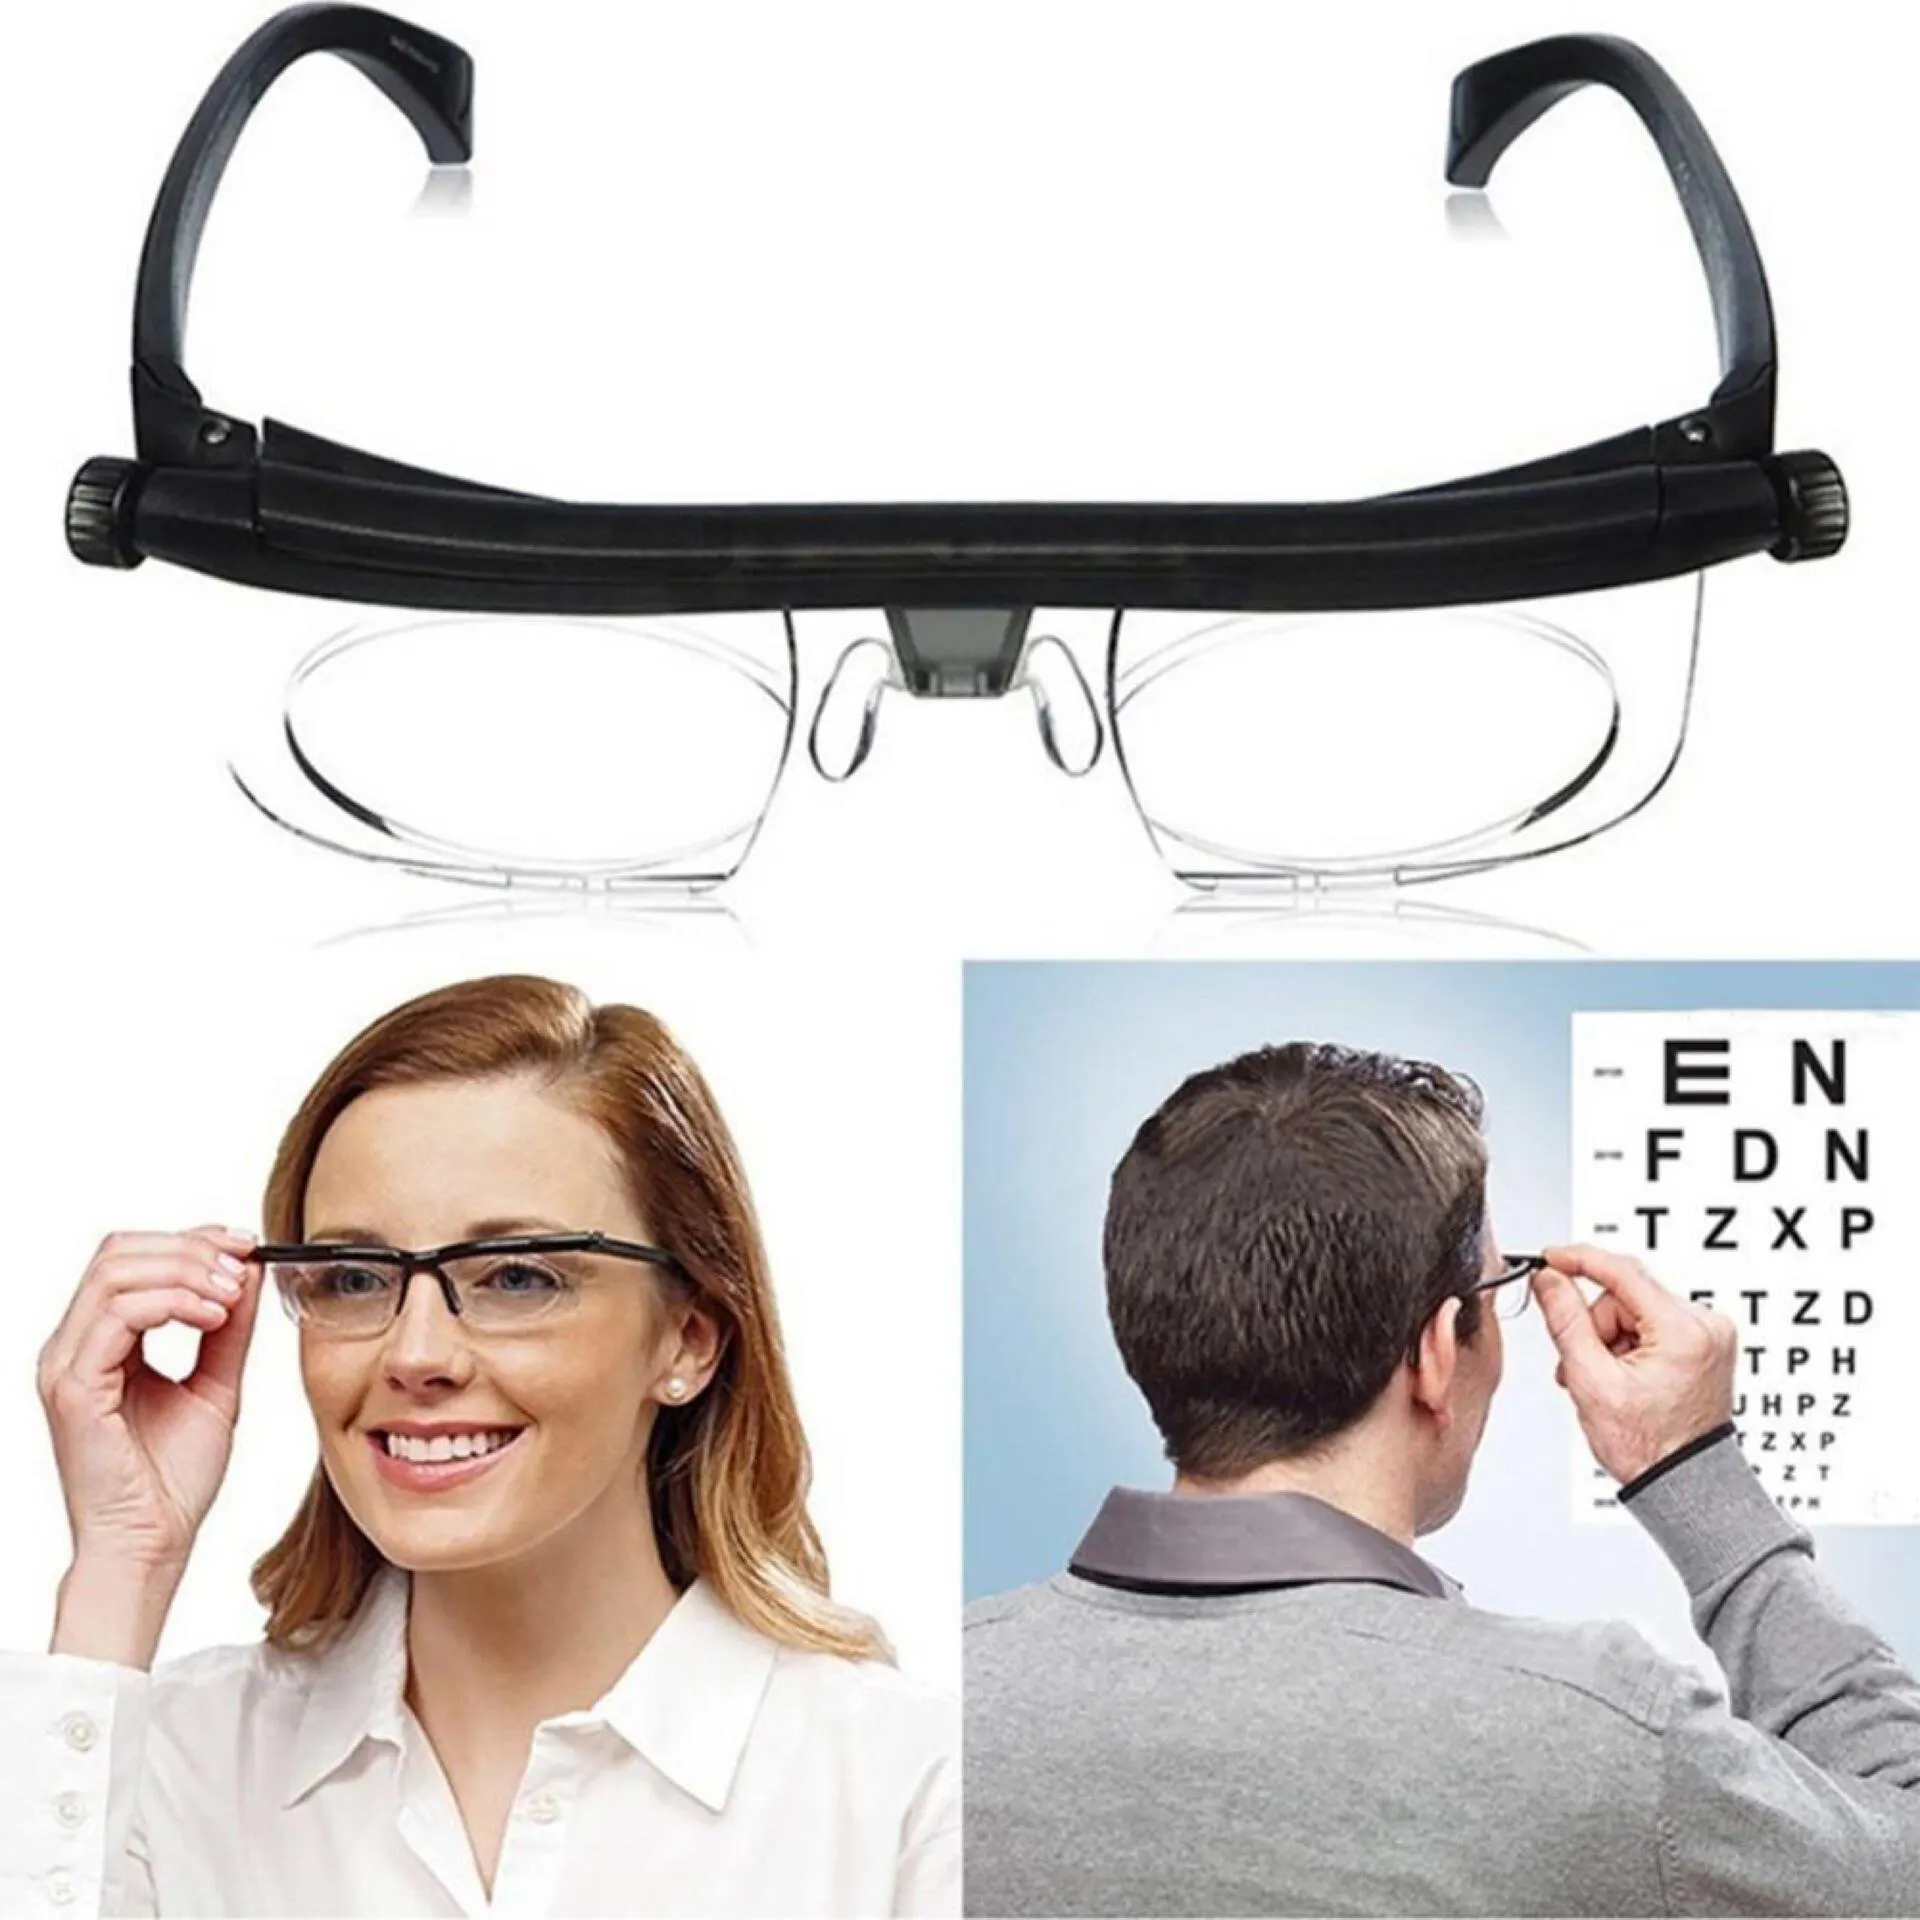 แว่นตาสำหรับ TR90สายตาสั้นและการมองเห็นที่ปรับได้ยอดนิยม4D ถึง + แว่นตา6D สำหรับอ่านหนังสือ